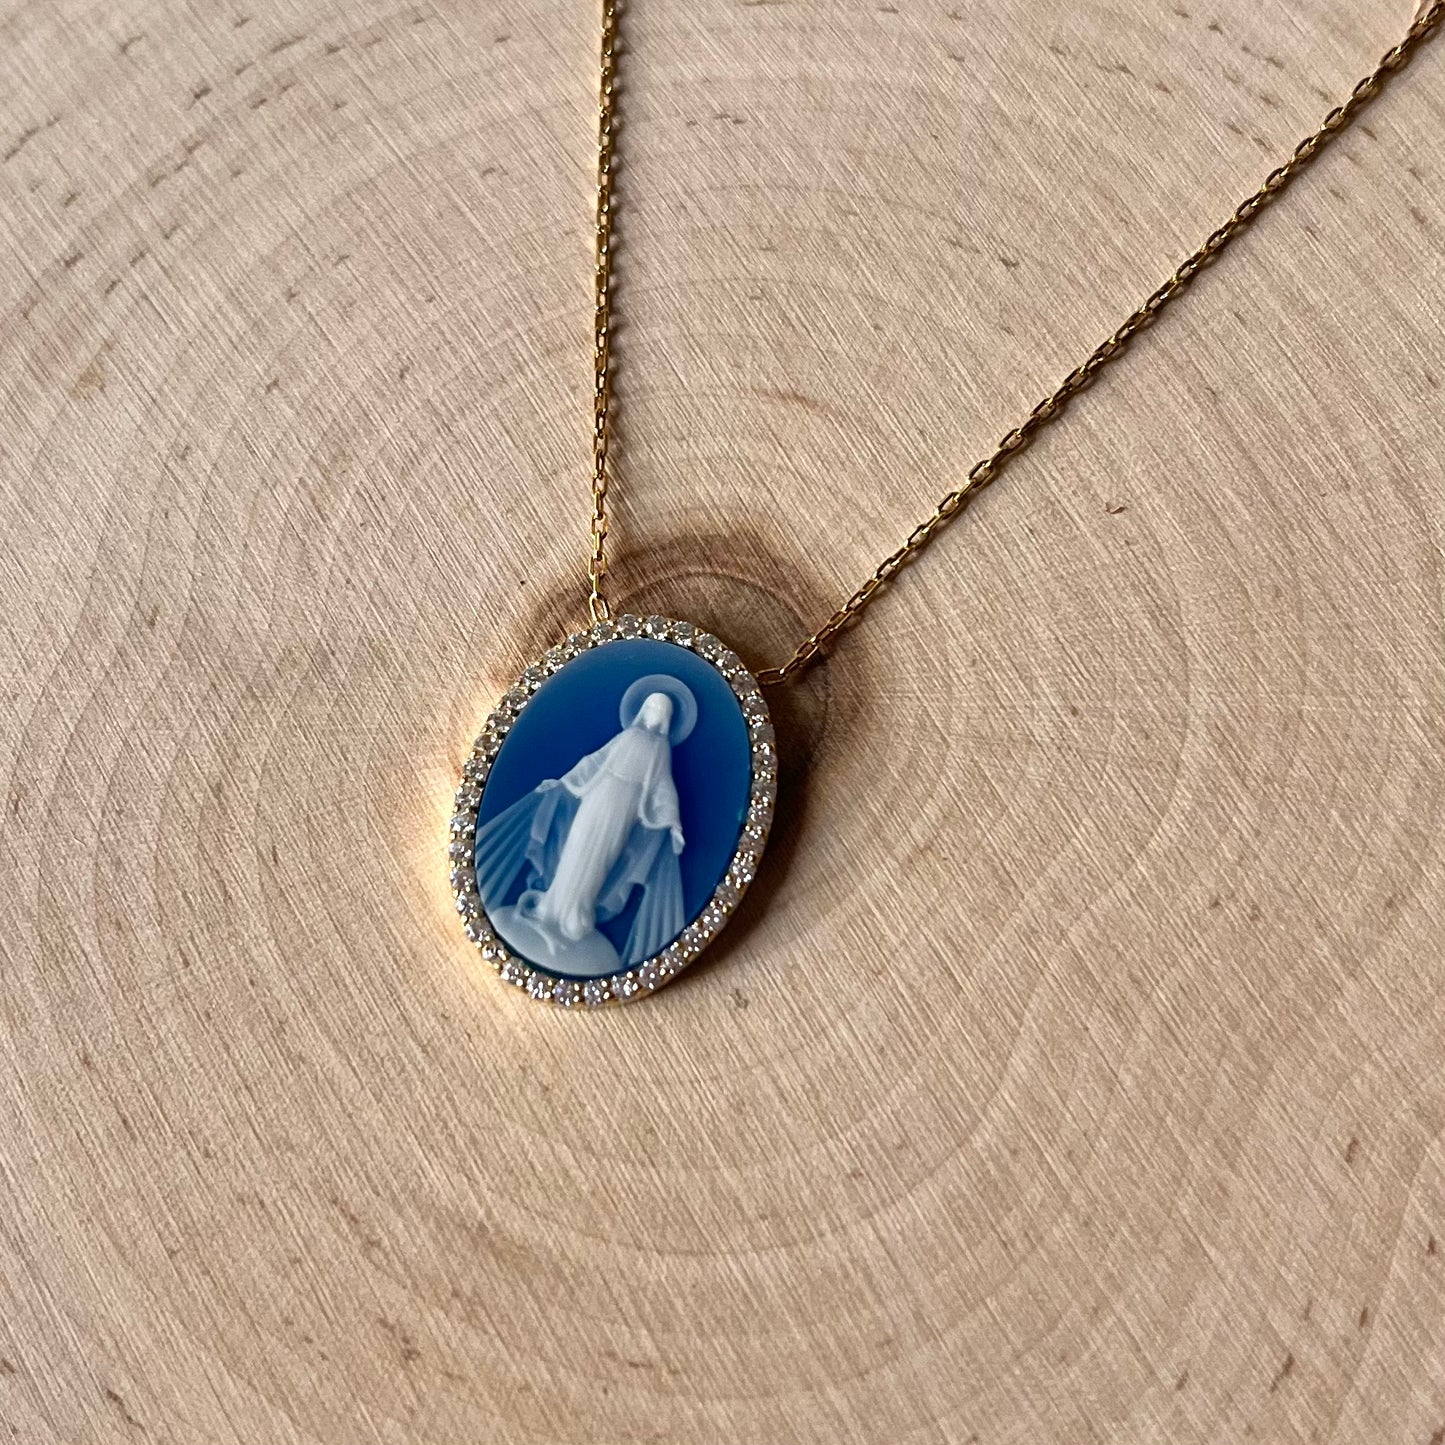 'Bernadette' Our Lady of Lourdes Blue Pendant Necklace